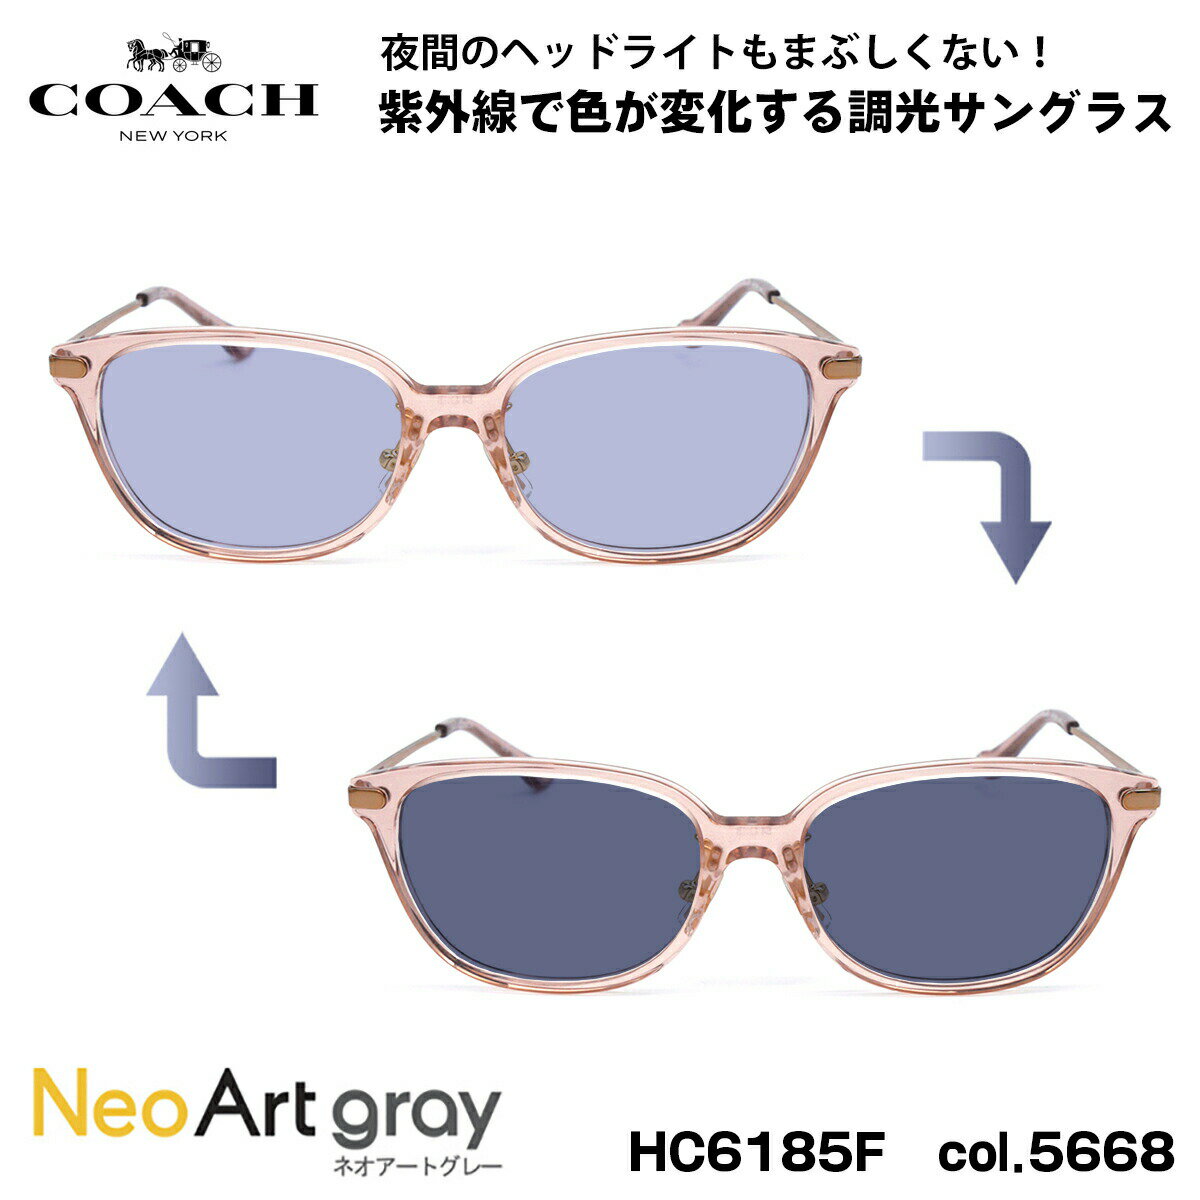 COACH 調光 サングラス HC6185F 5668 54mm アジアンフィット コーチ 国内正規品 ネオアート